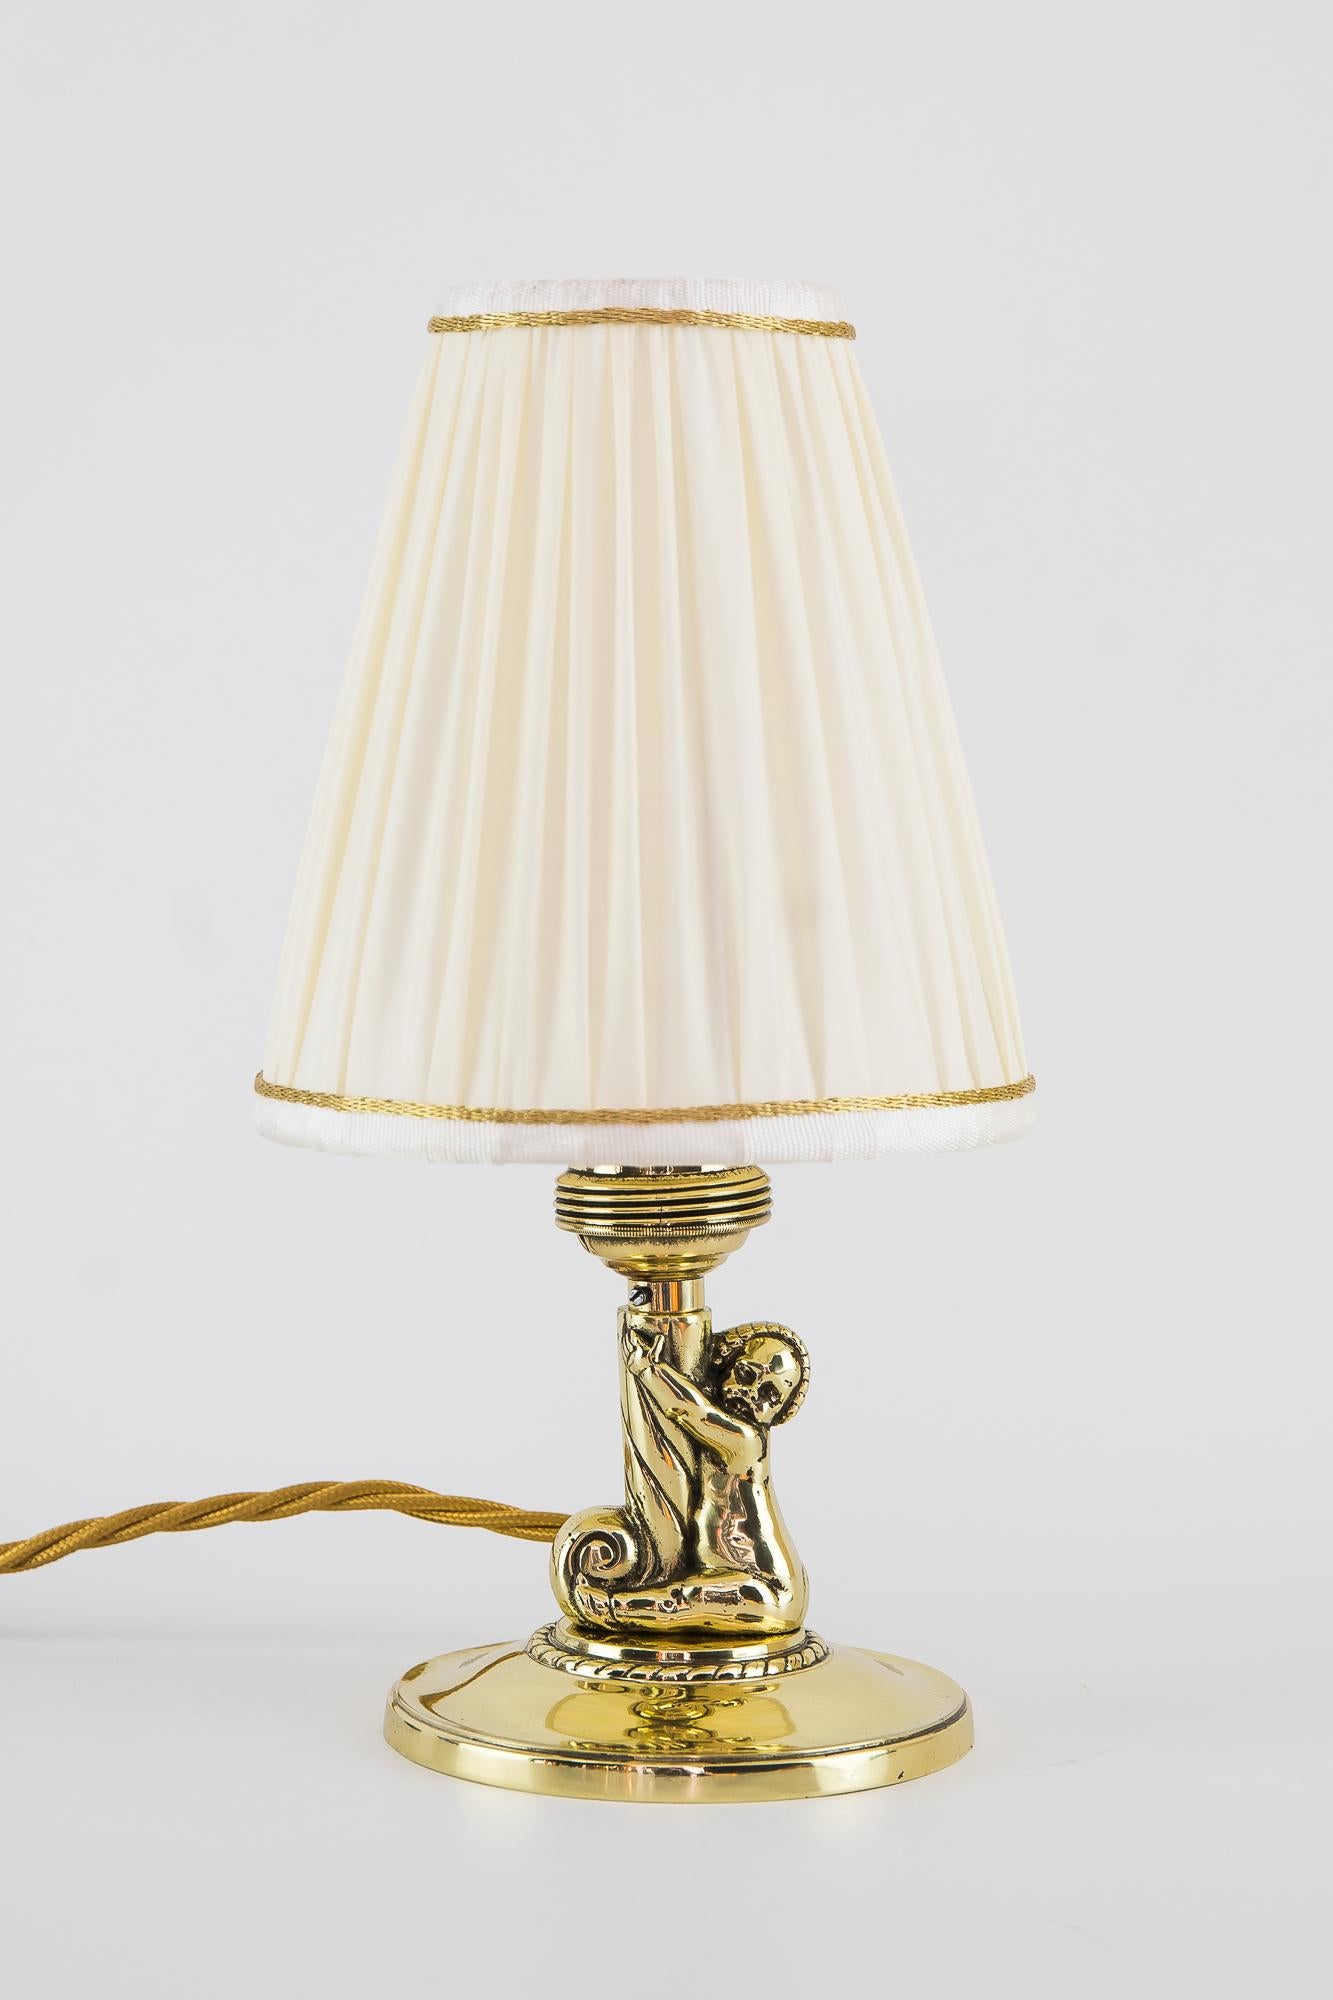 2 Art Deco Tischlampen mit Schirmen, Wien, um 1920er Jahre
Messing poliert und emailliert
Lampenschirme sind neu (ersetzt)
Der Kunde kann zwischen diesen beiden Farbmodellen wählen
Maße: Höhe mit den gelben Schirmen: 27 cm
Höhe mit den roten